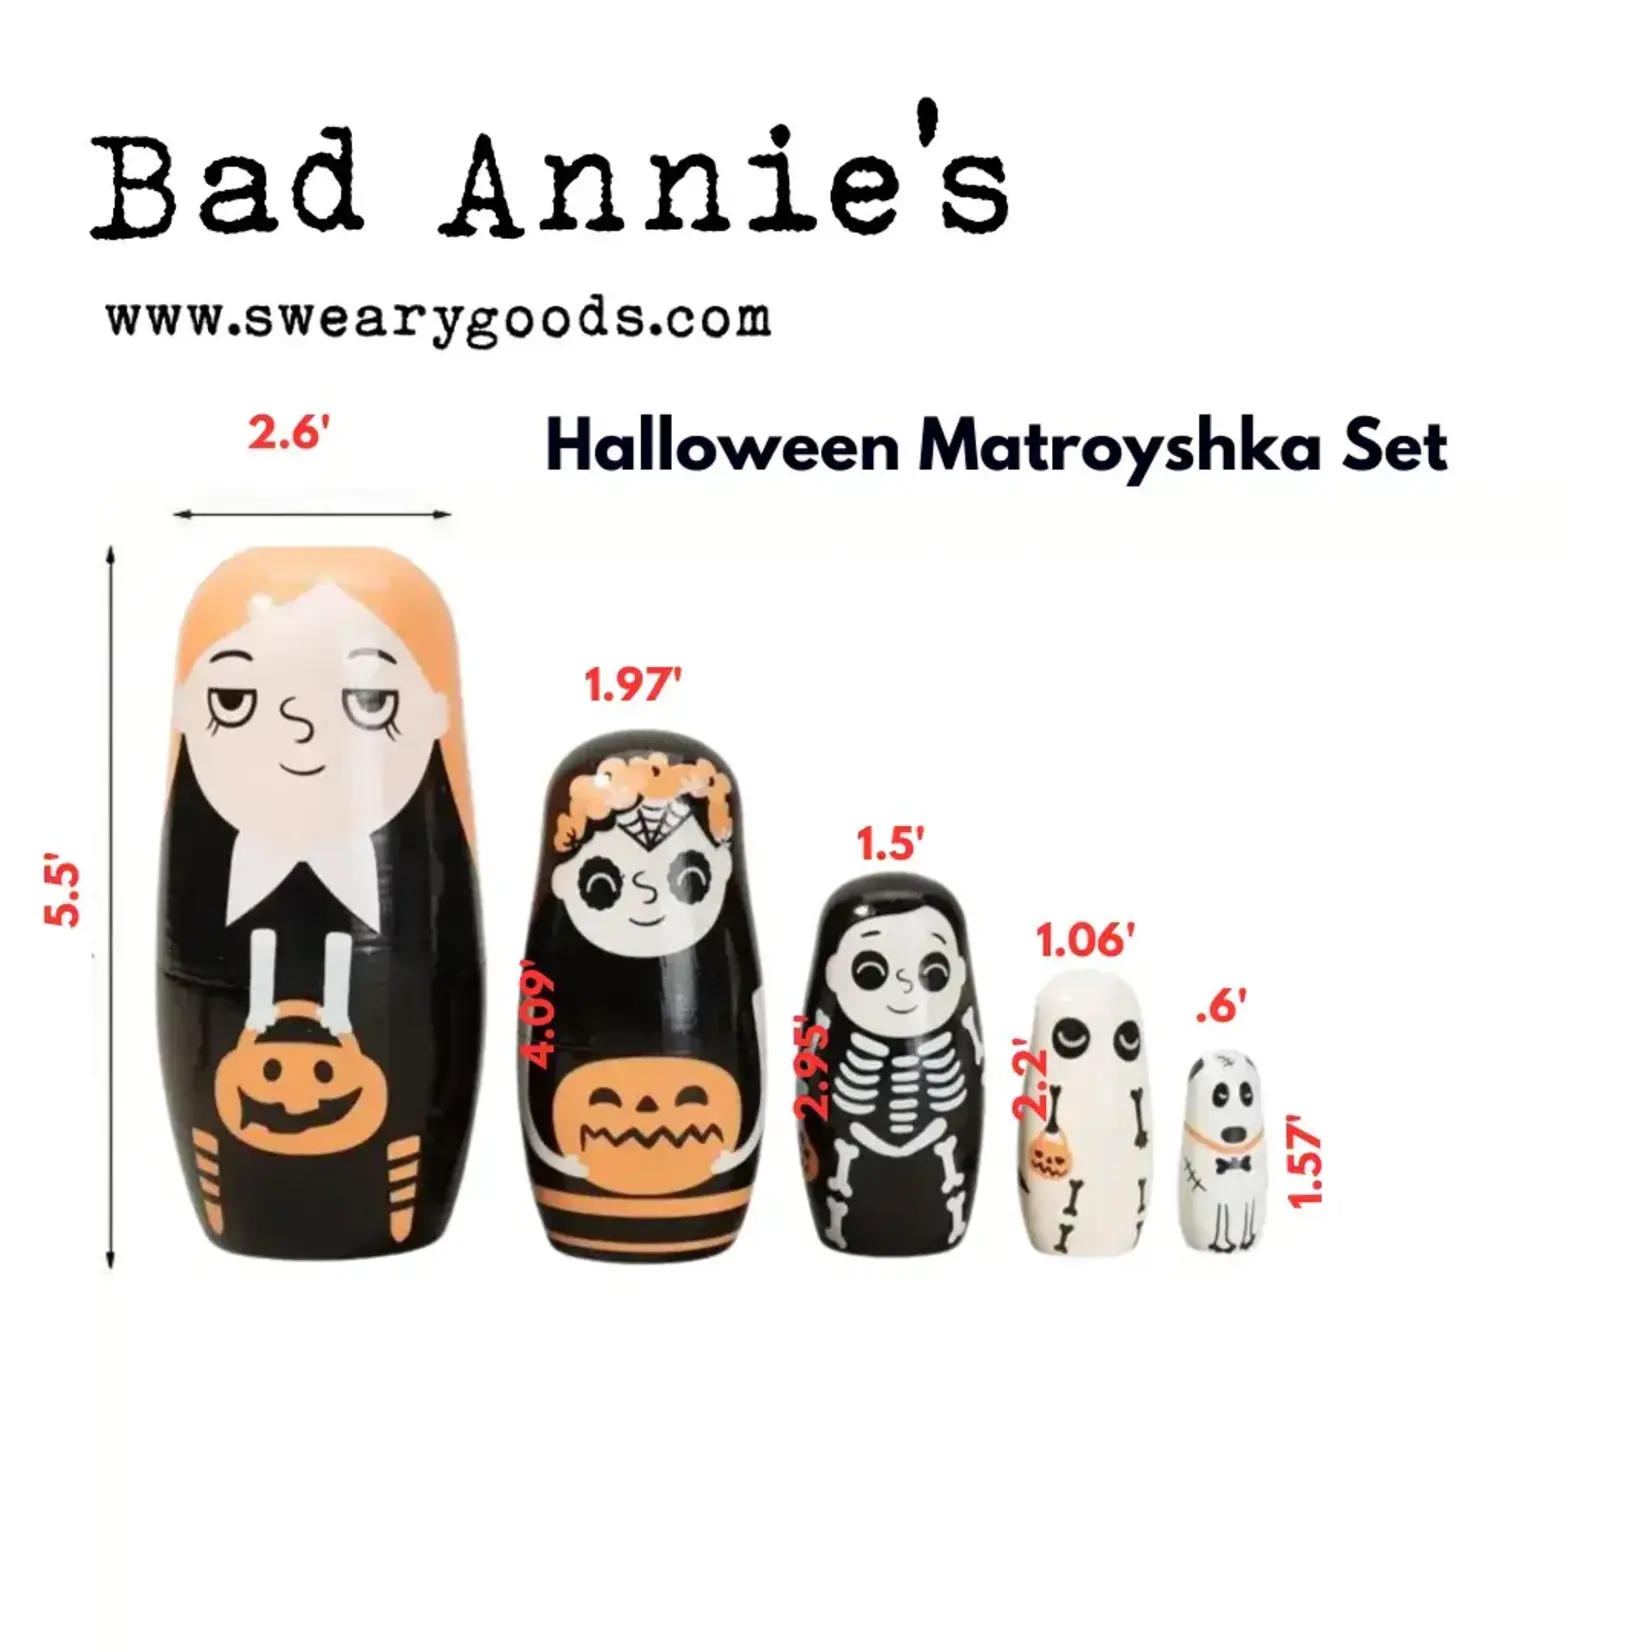 Matroyshka Dolls - Halloween Themed